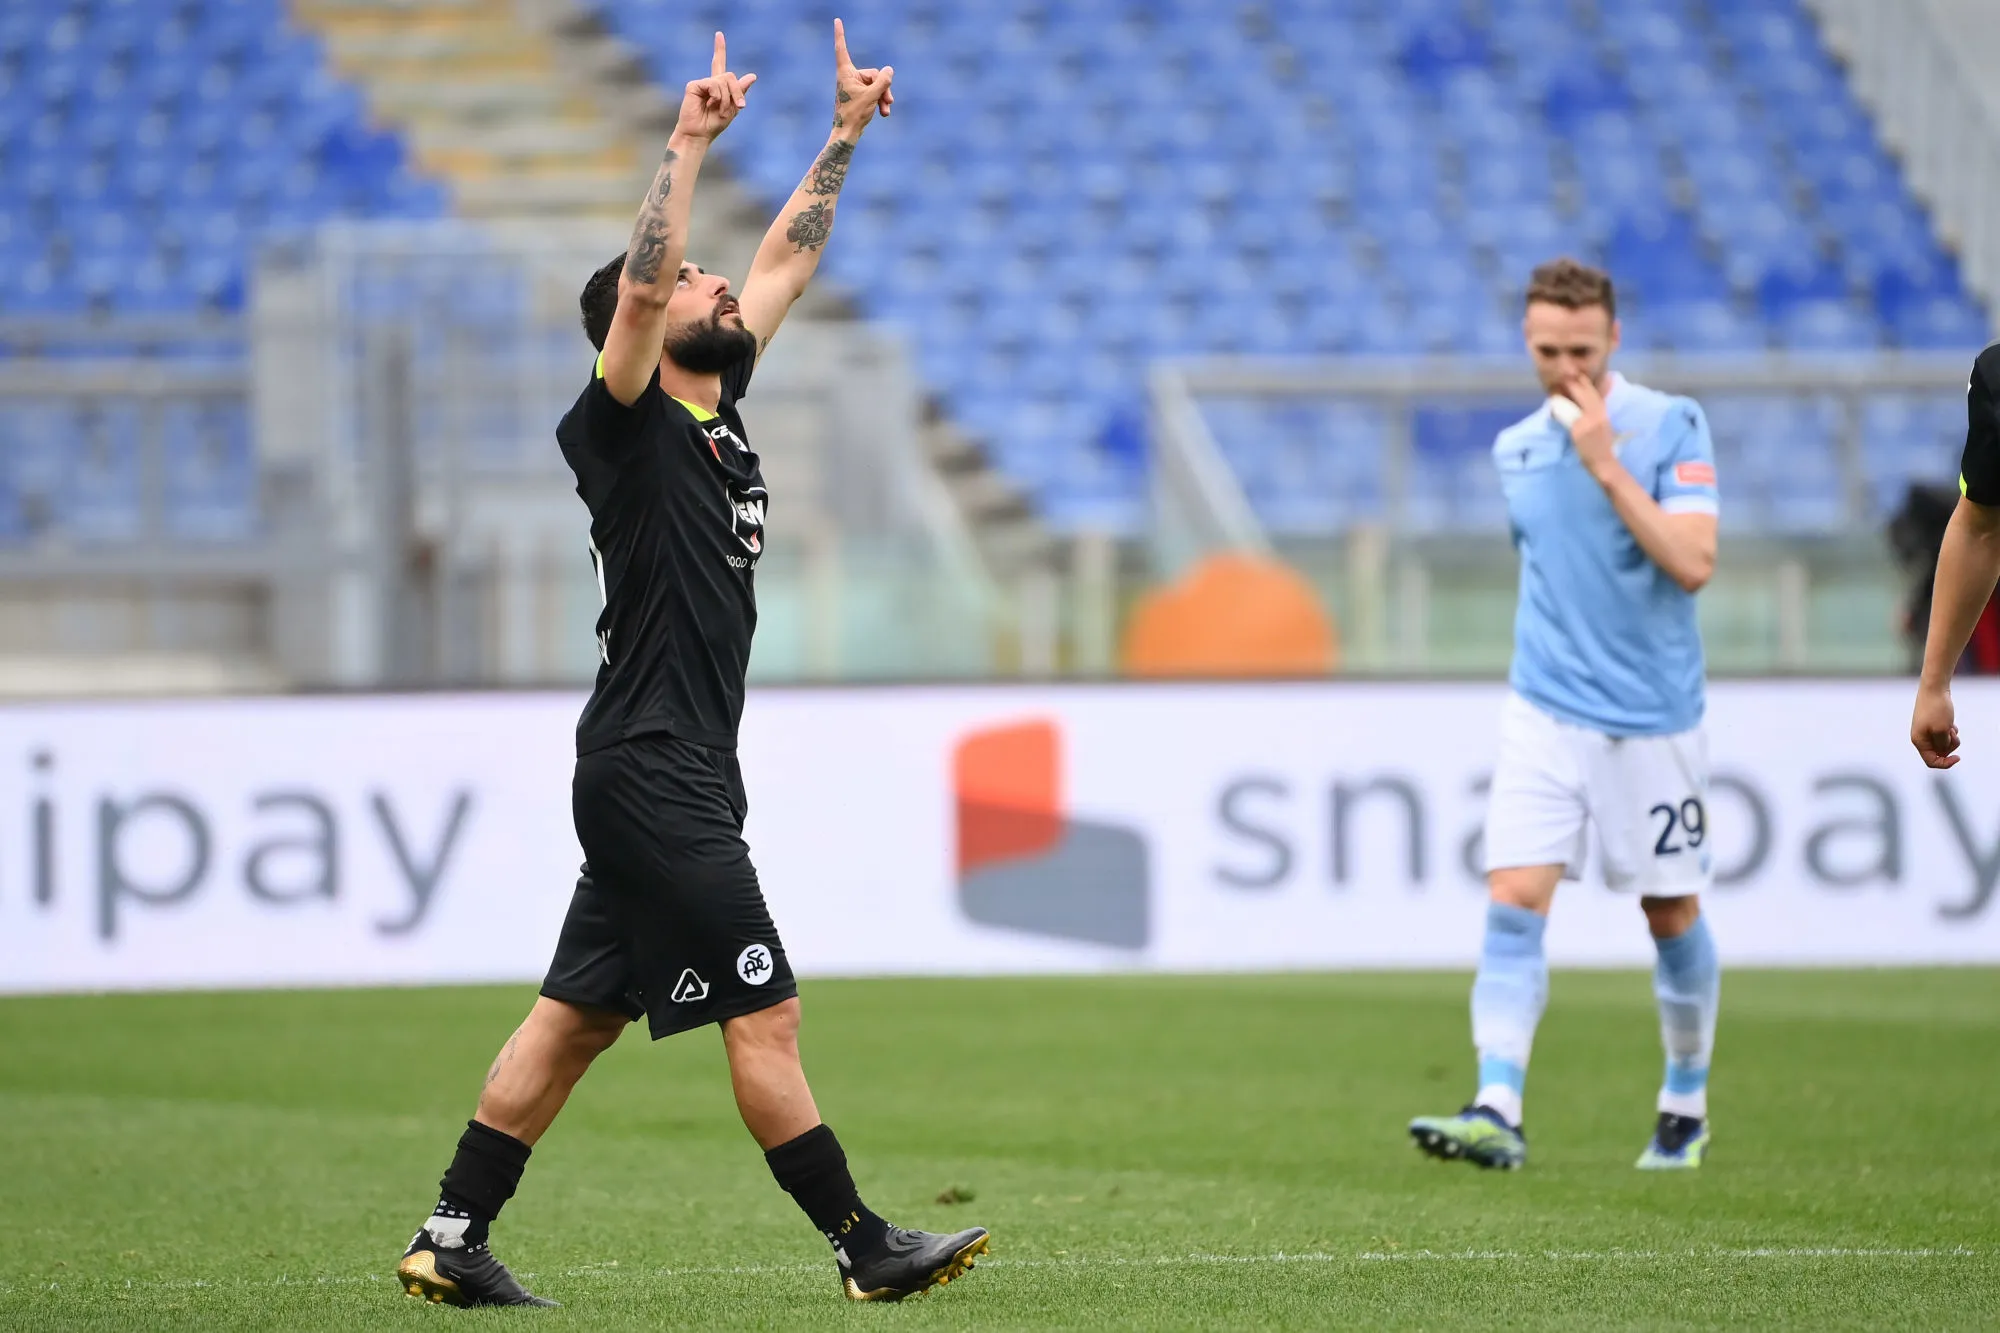 Le superbe ciseau de Daniele Verde avec La Spezia contre la Lazio